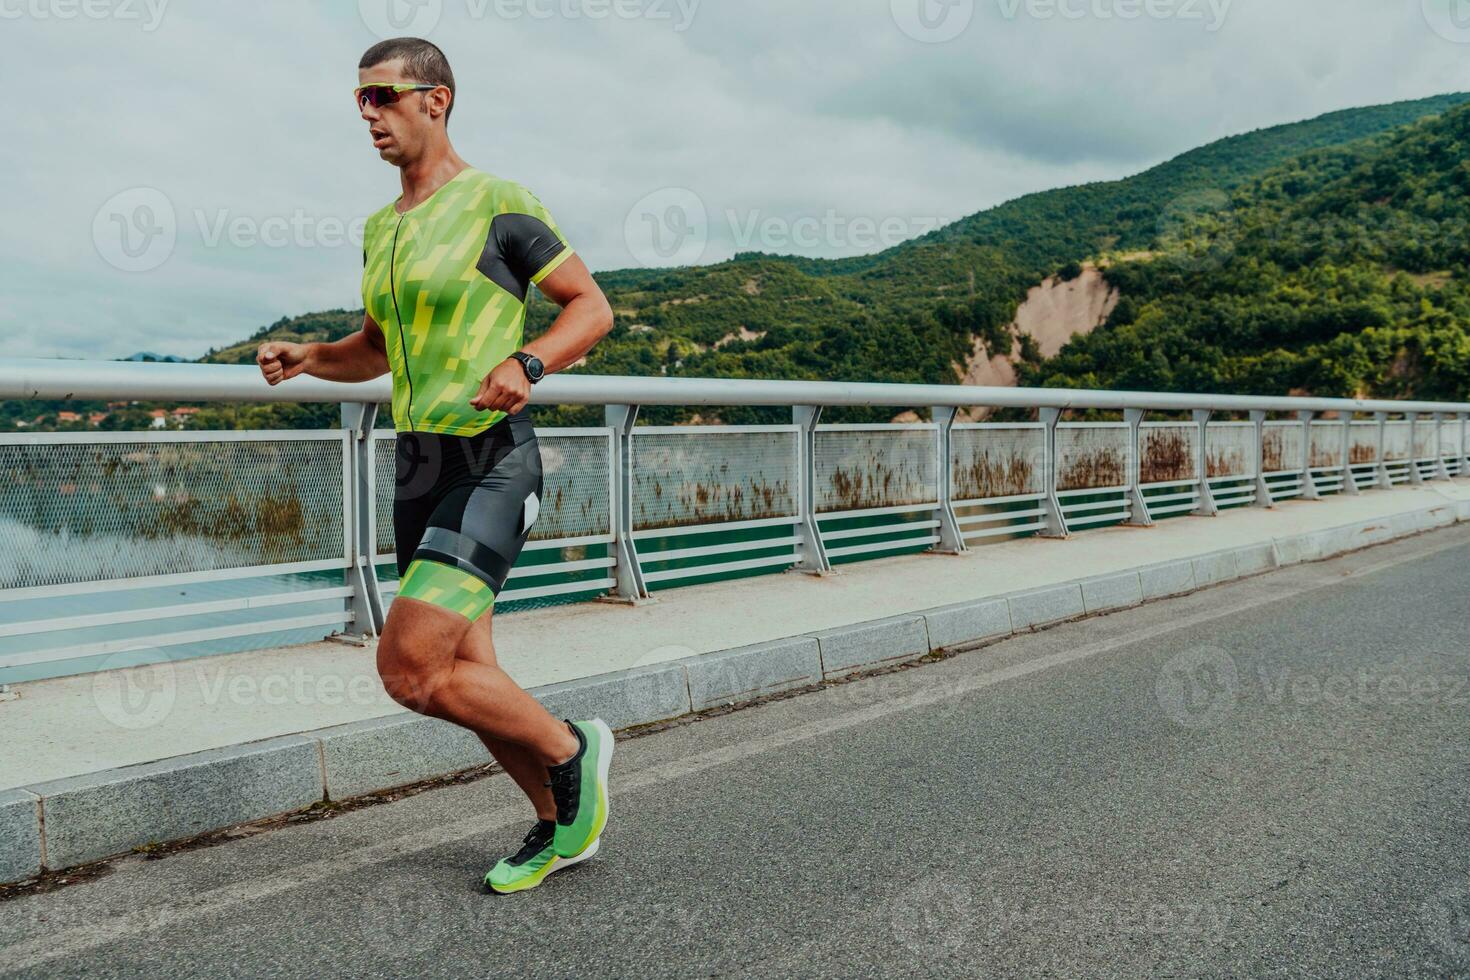 een atleet rennen een marathon en voorbereidingen treffen voor zijn wedstrijd. foto van een marathon loper rennen in een stedelijk milieu